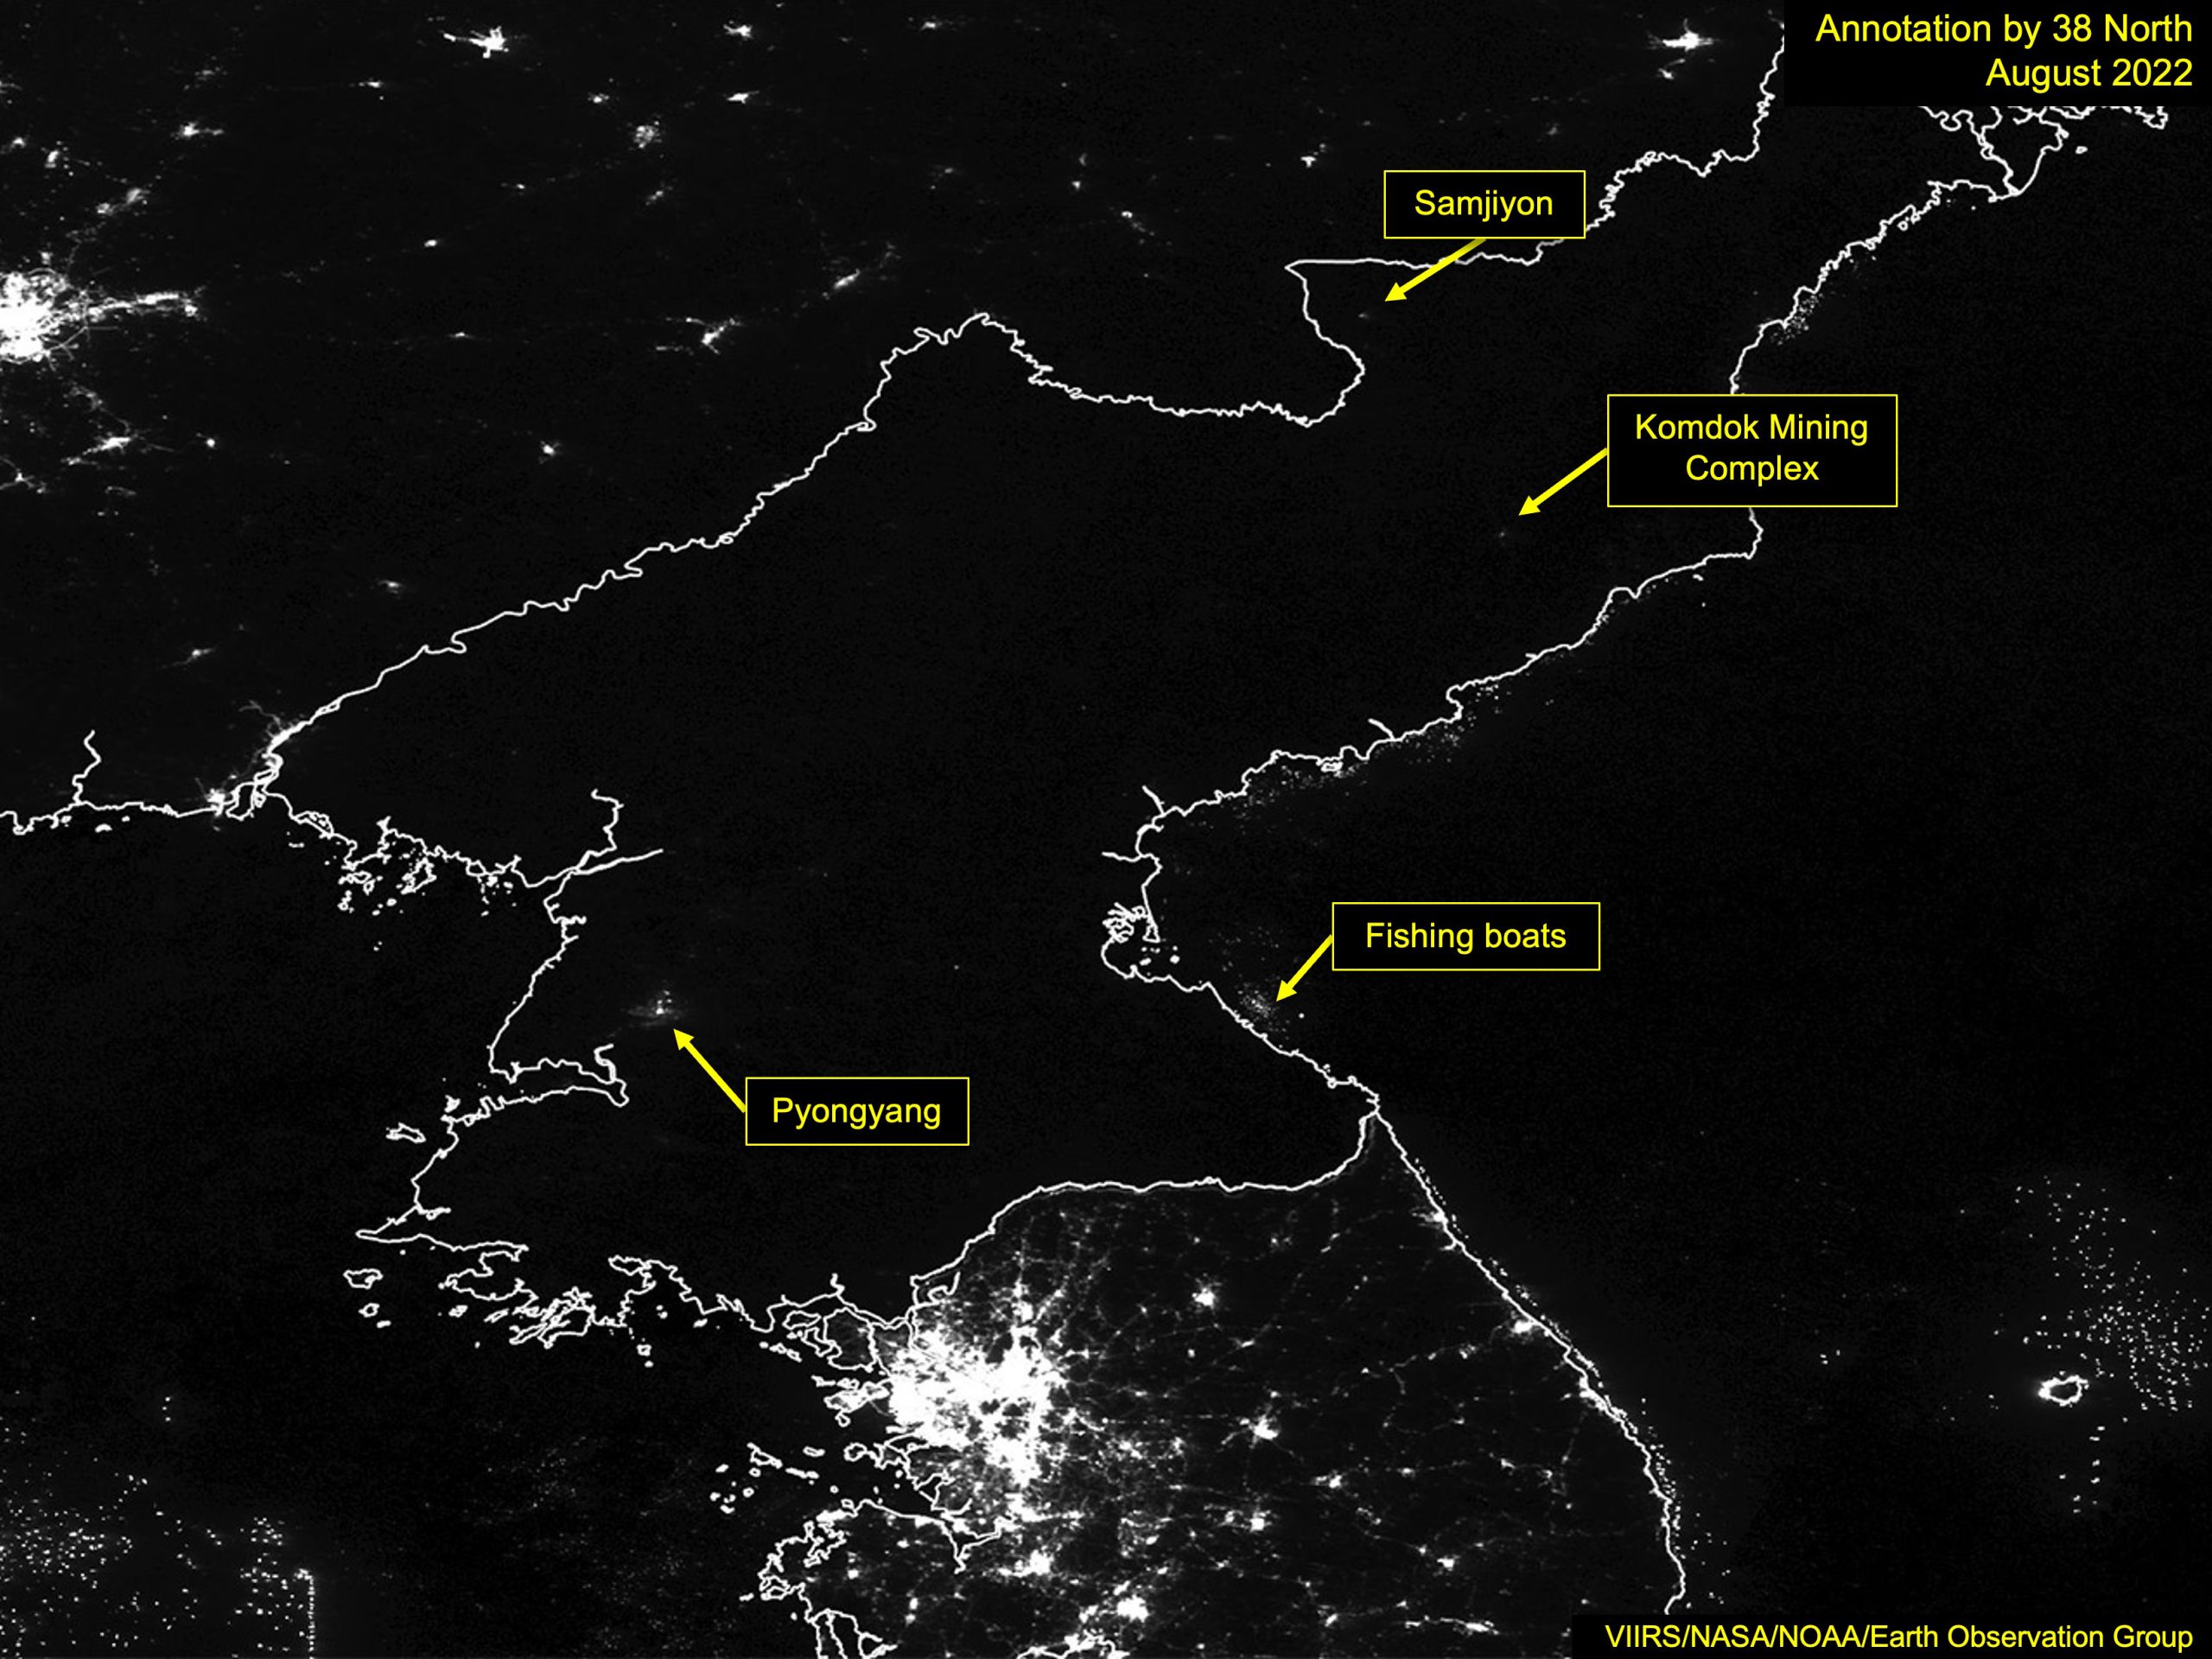 A Fresh Look at North Korea at Night - 38 North: Informed Analysis